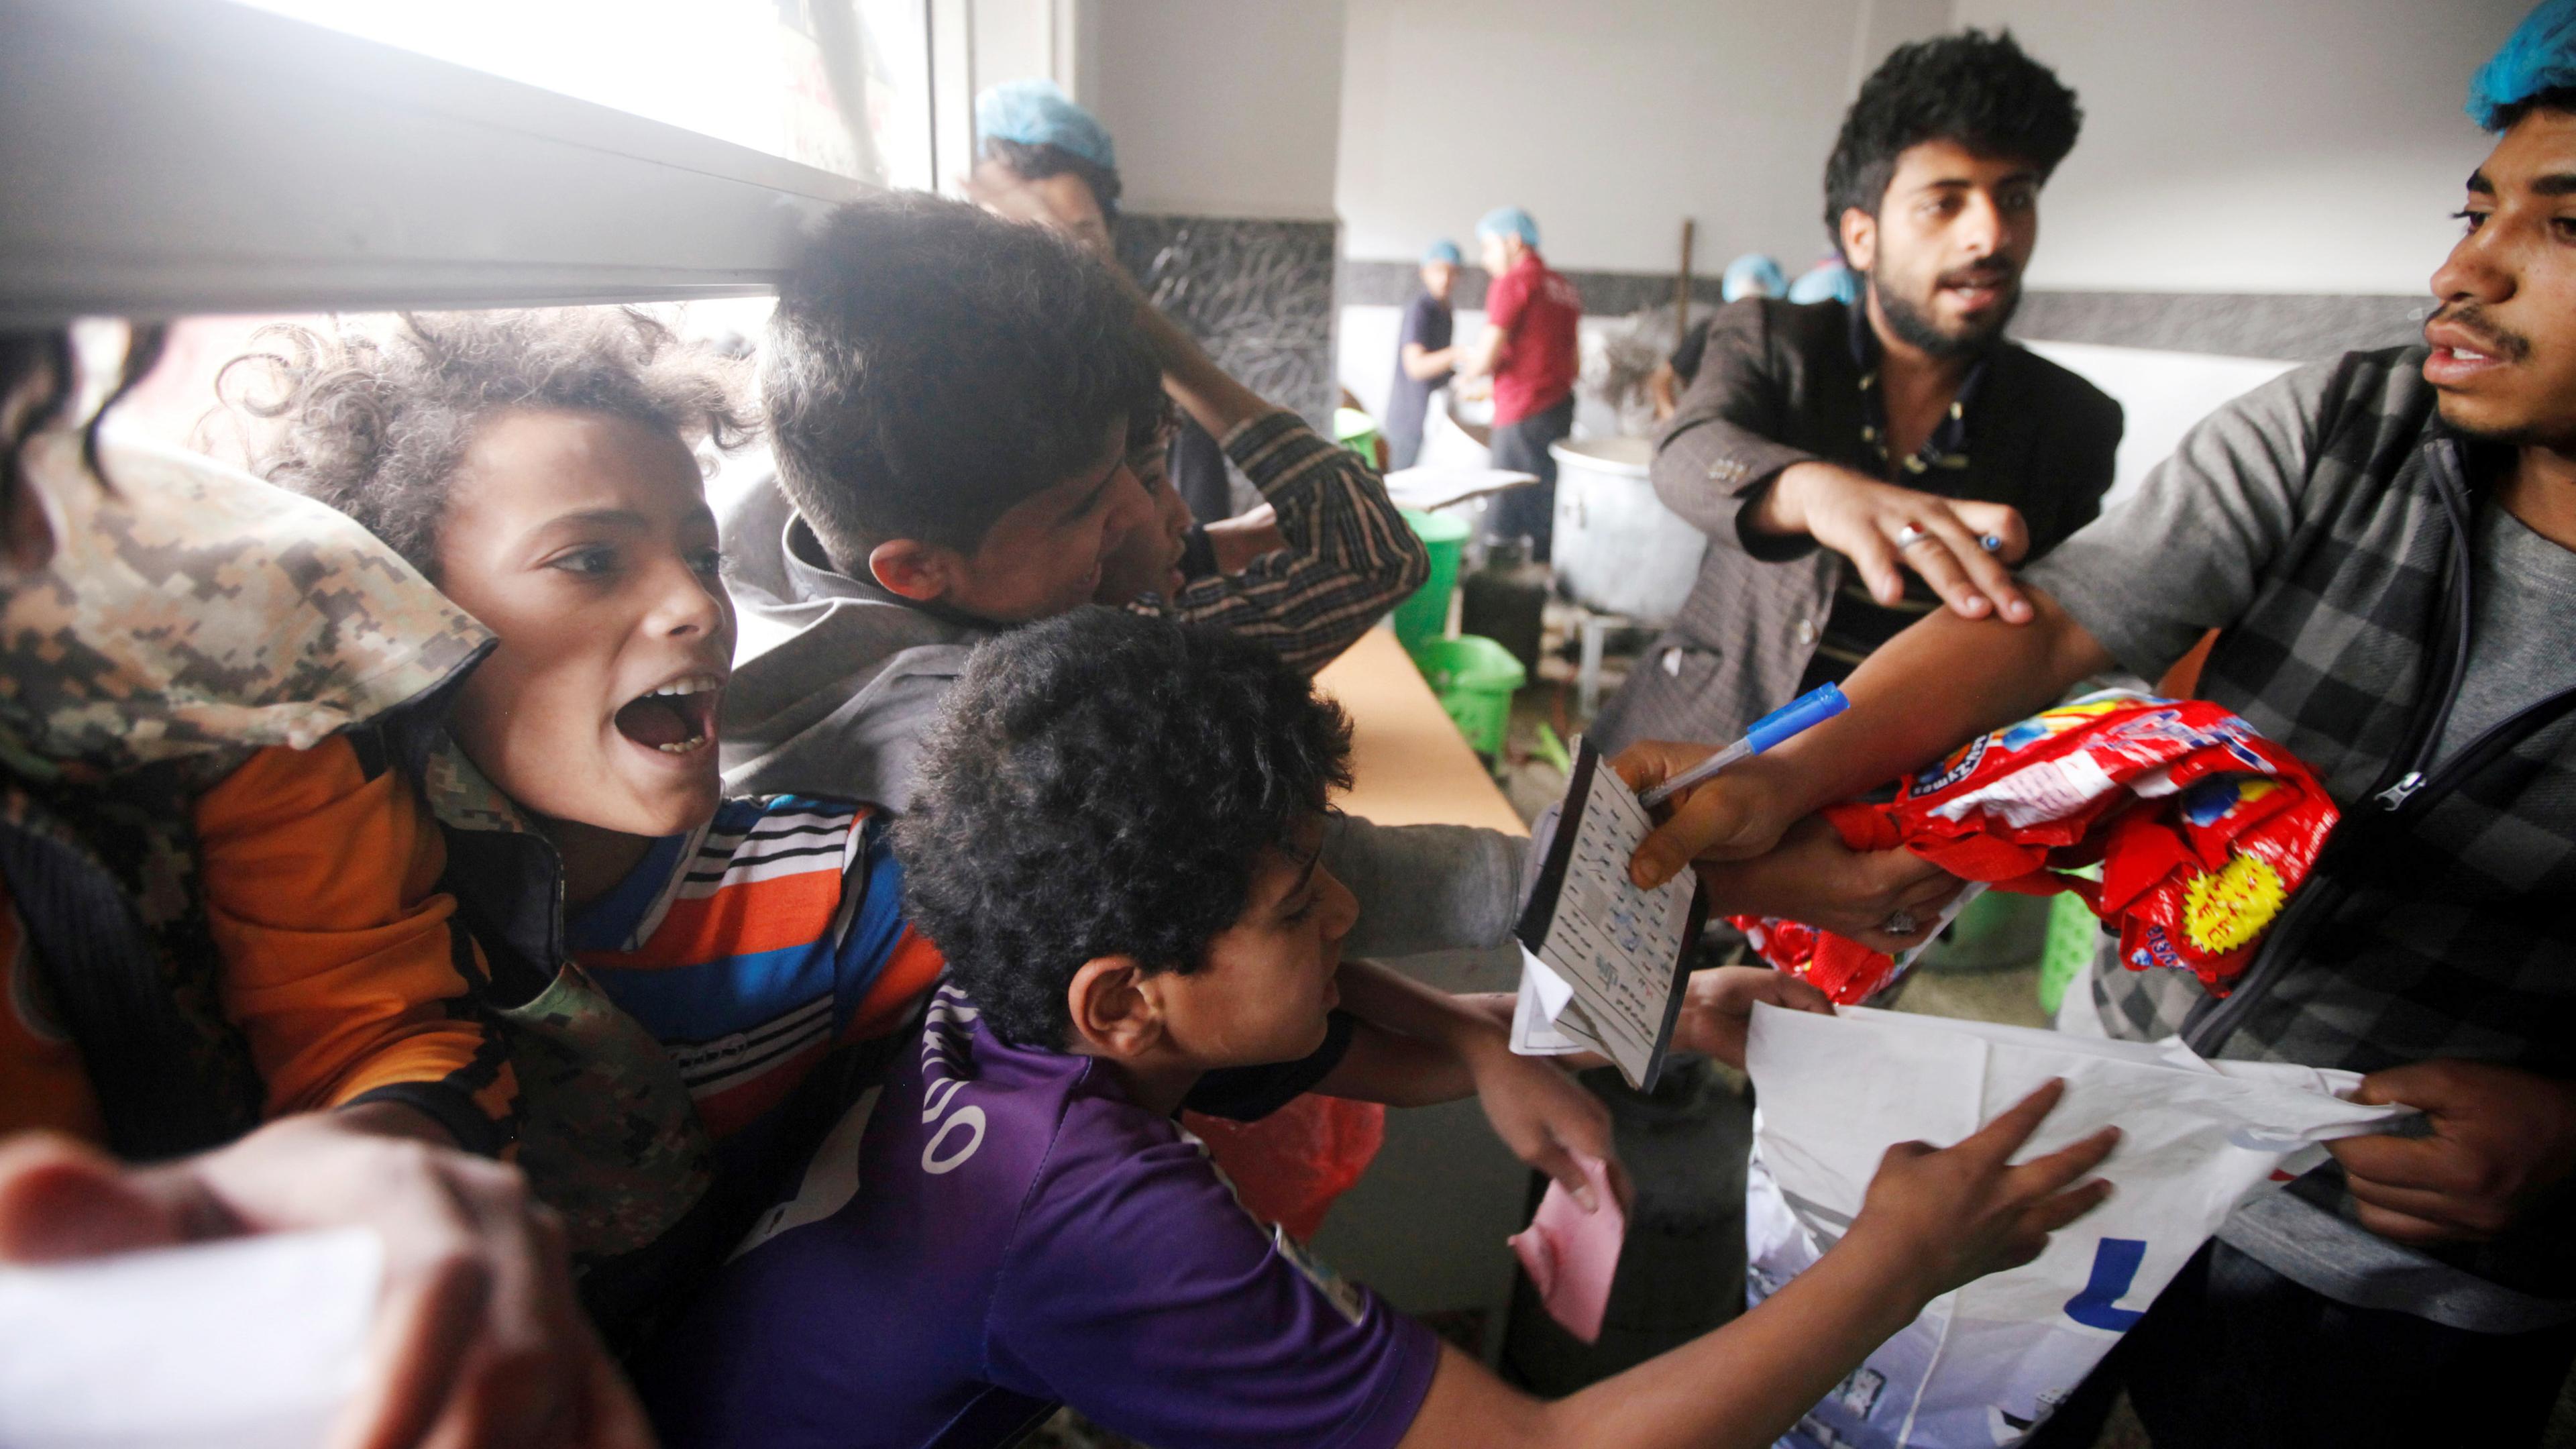 Jungen reagieren, während sie darauf warten, ihr Essen in einer Wohltätigkeitsküche zu bekommen in Sanaa (Jemen) zu, aufgenommen am 16.05.2019